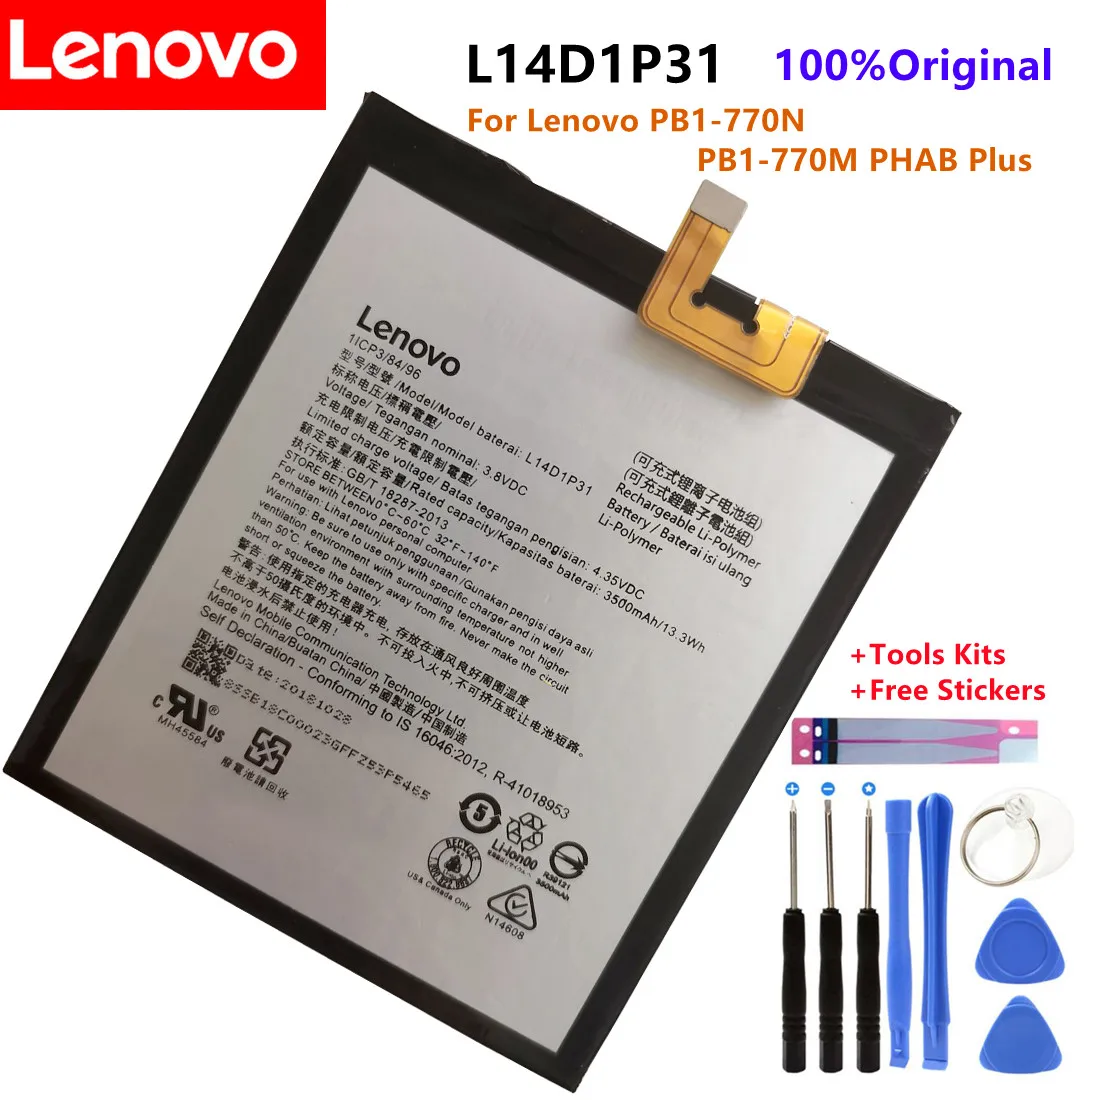 

Original New High quality L14D1P31 3500mAh Battery For Lenovo PB1-770N PB1-770M TB-7703x PHAB Plus battery+ Tools